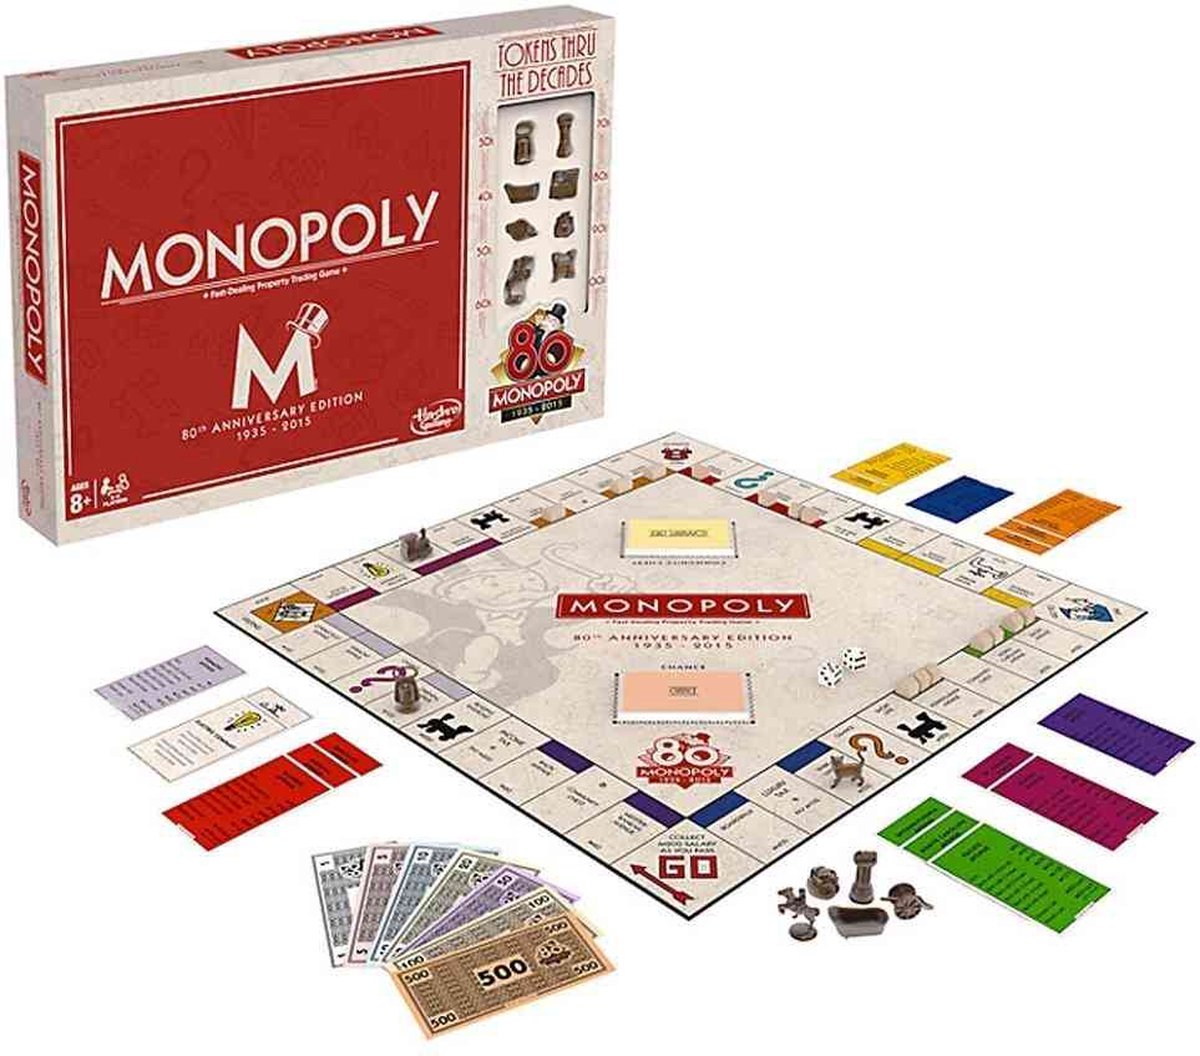 Orkaan Herhaal Haarvaten Monopoly 80ste Verjaardag Editie Nederland - Bordspel | Games | bol.com